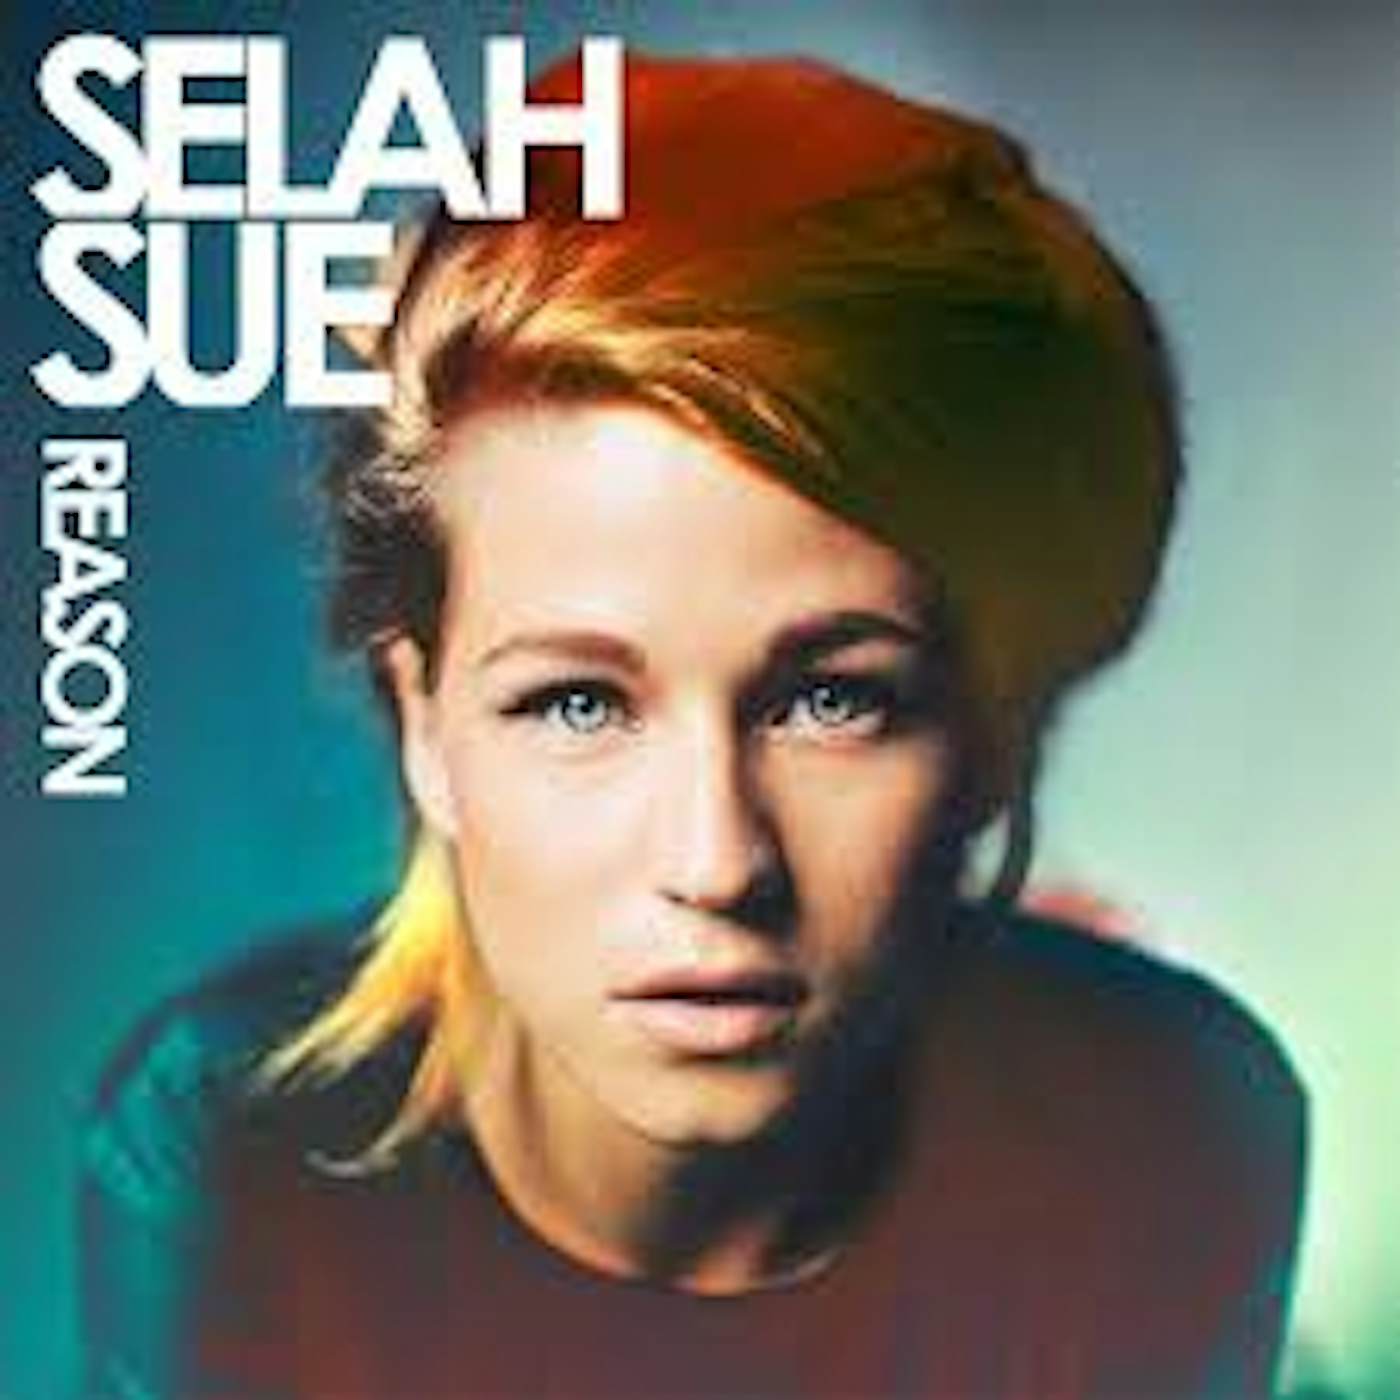 Selah Sue Reason Vinyl Record